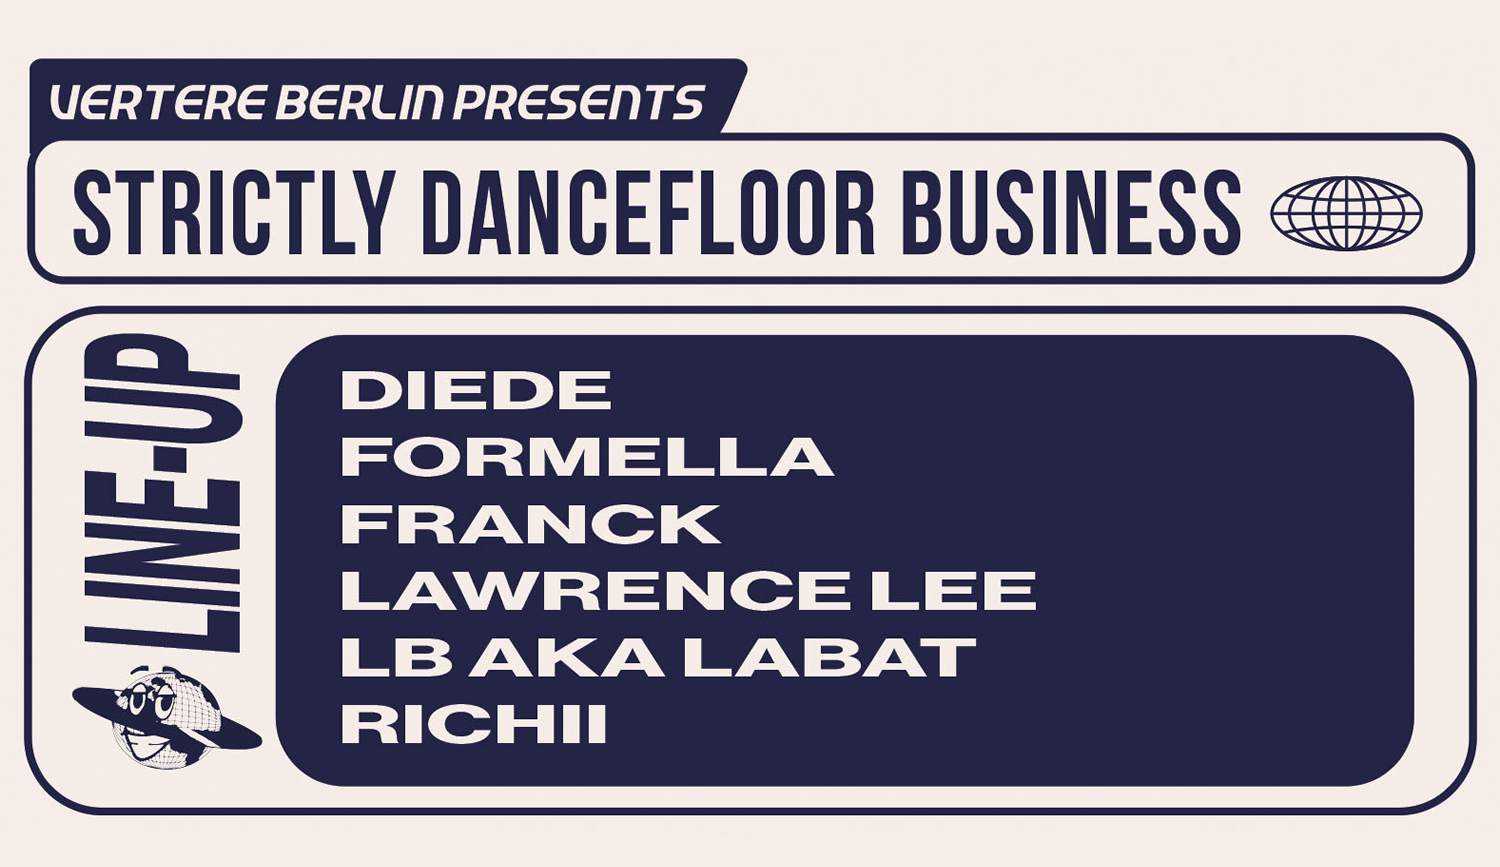 Vertere Berlin: Strictly Dancefloor Business - Flyer front